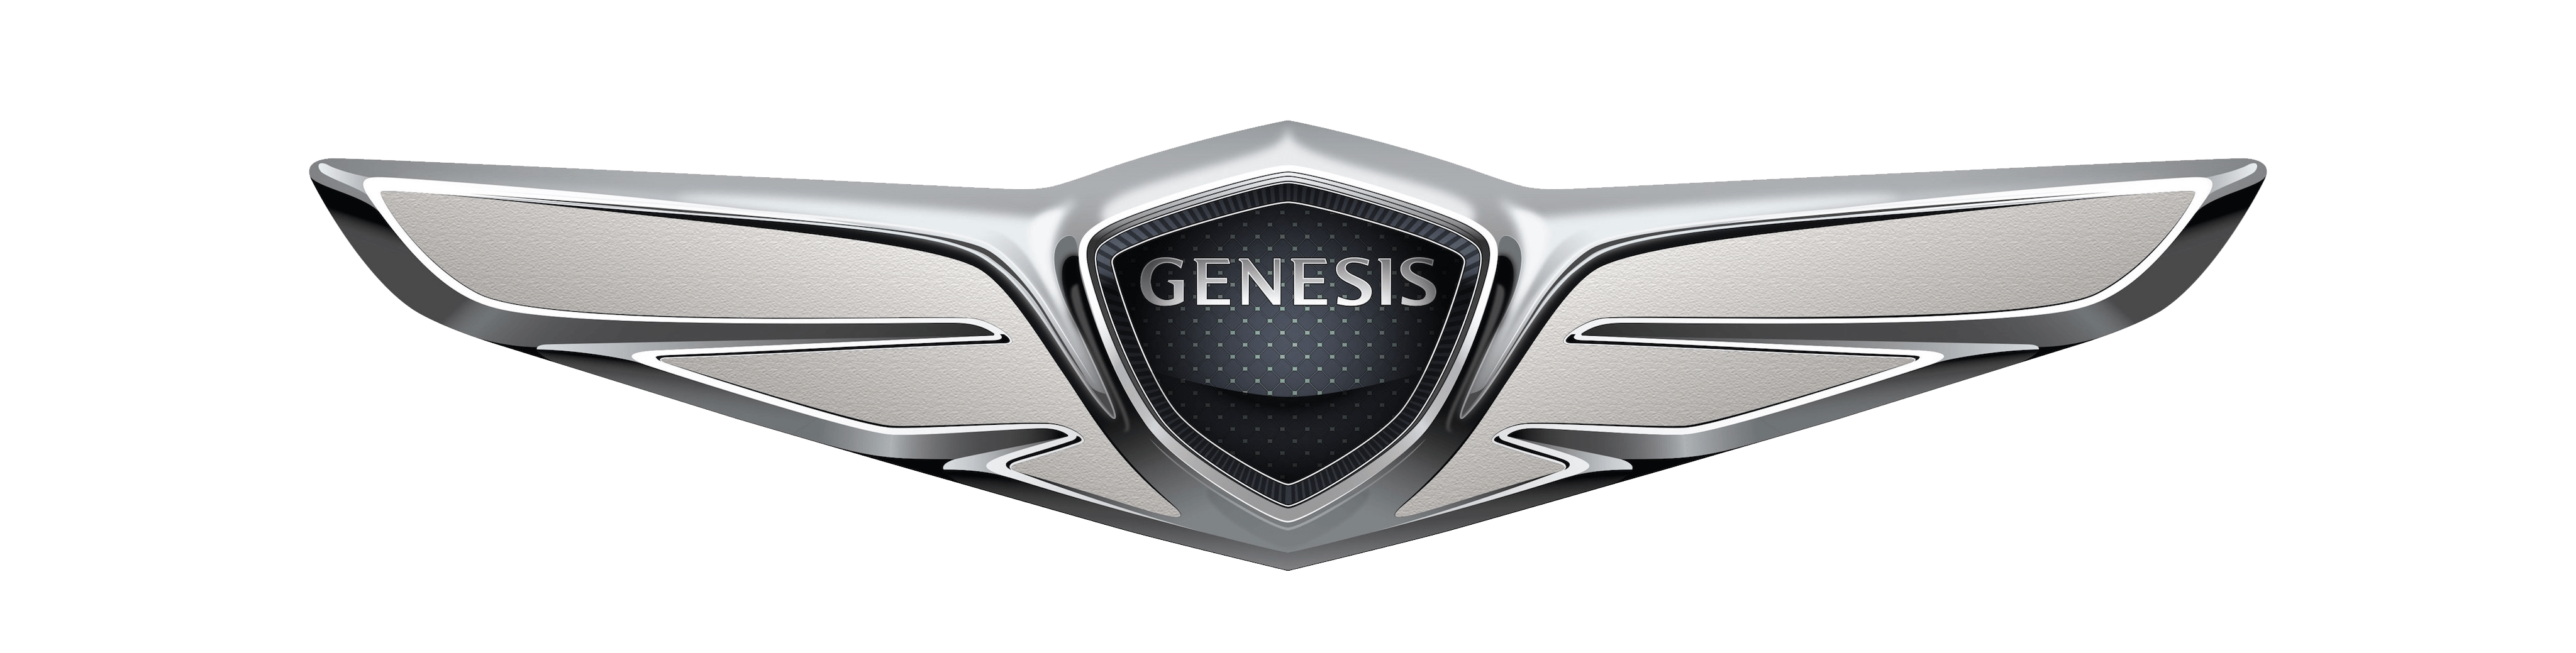 Hyundai Genesis Logo Svg Meet The 2021 Genesis G80 Luxury Midsize